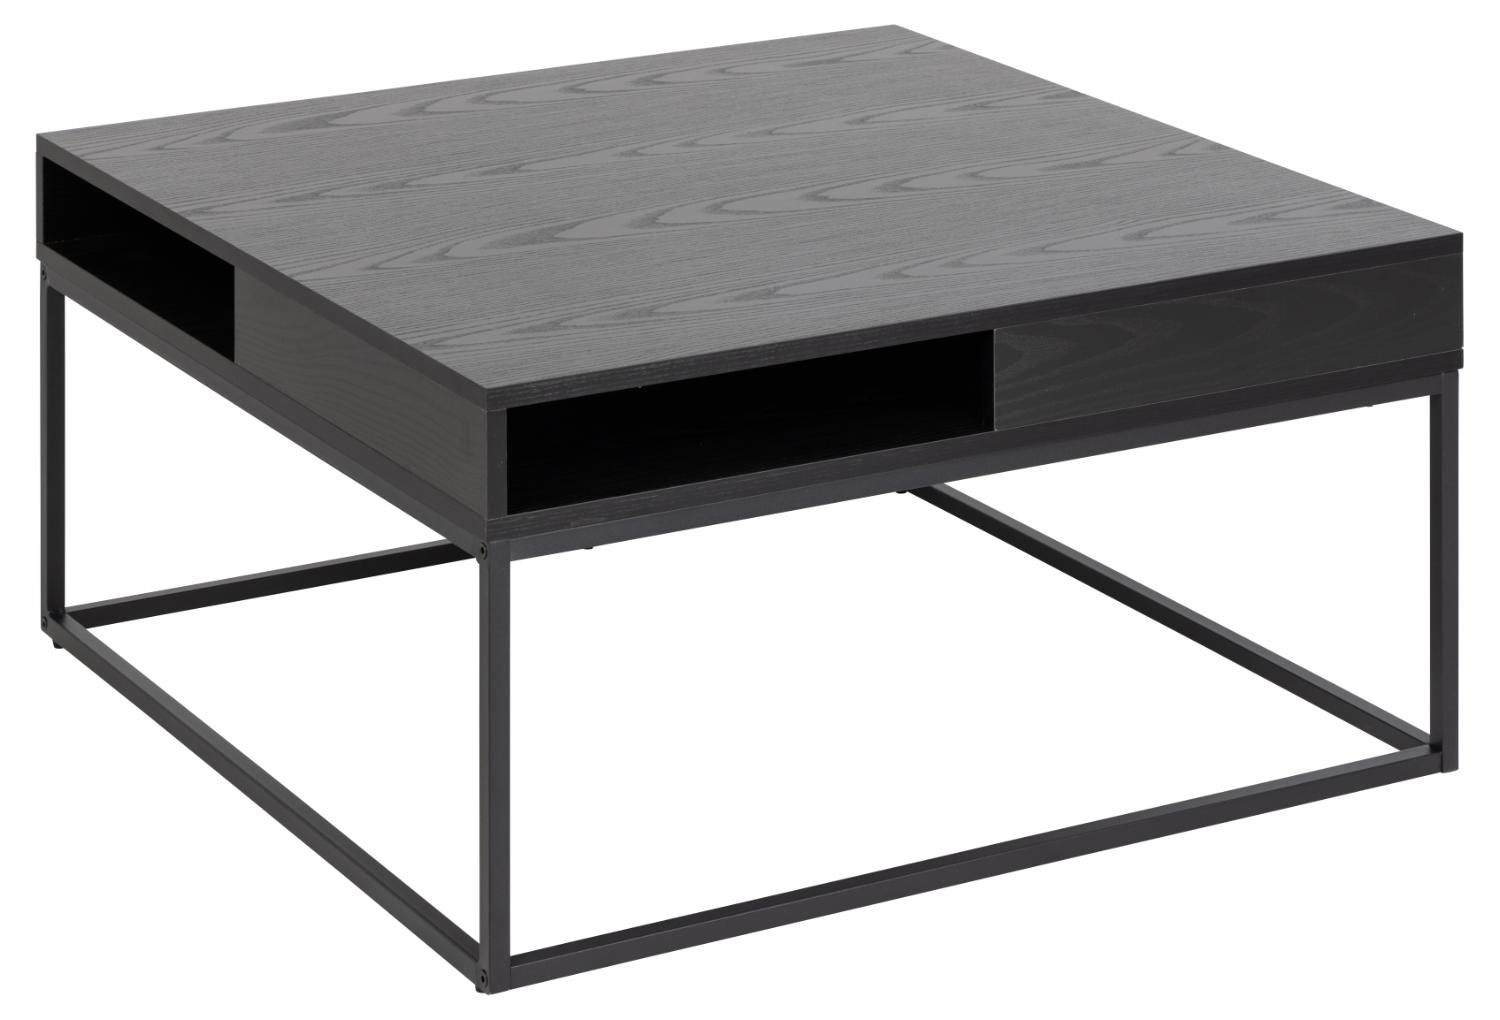 ACT NORDIC Willford soffbord, m. 1 rum, fyrkantigt - svart ask melamin och svart metall